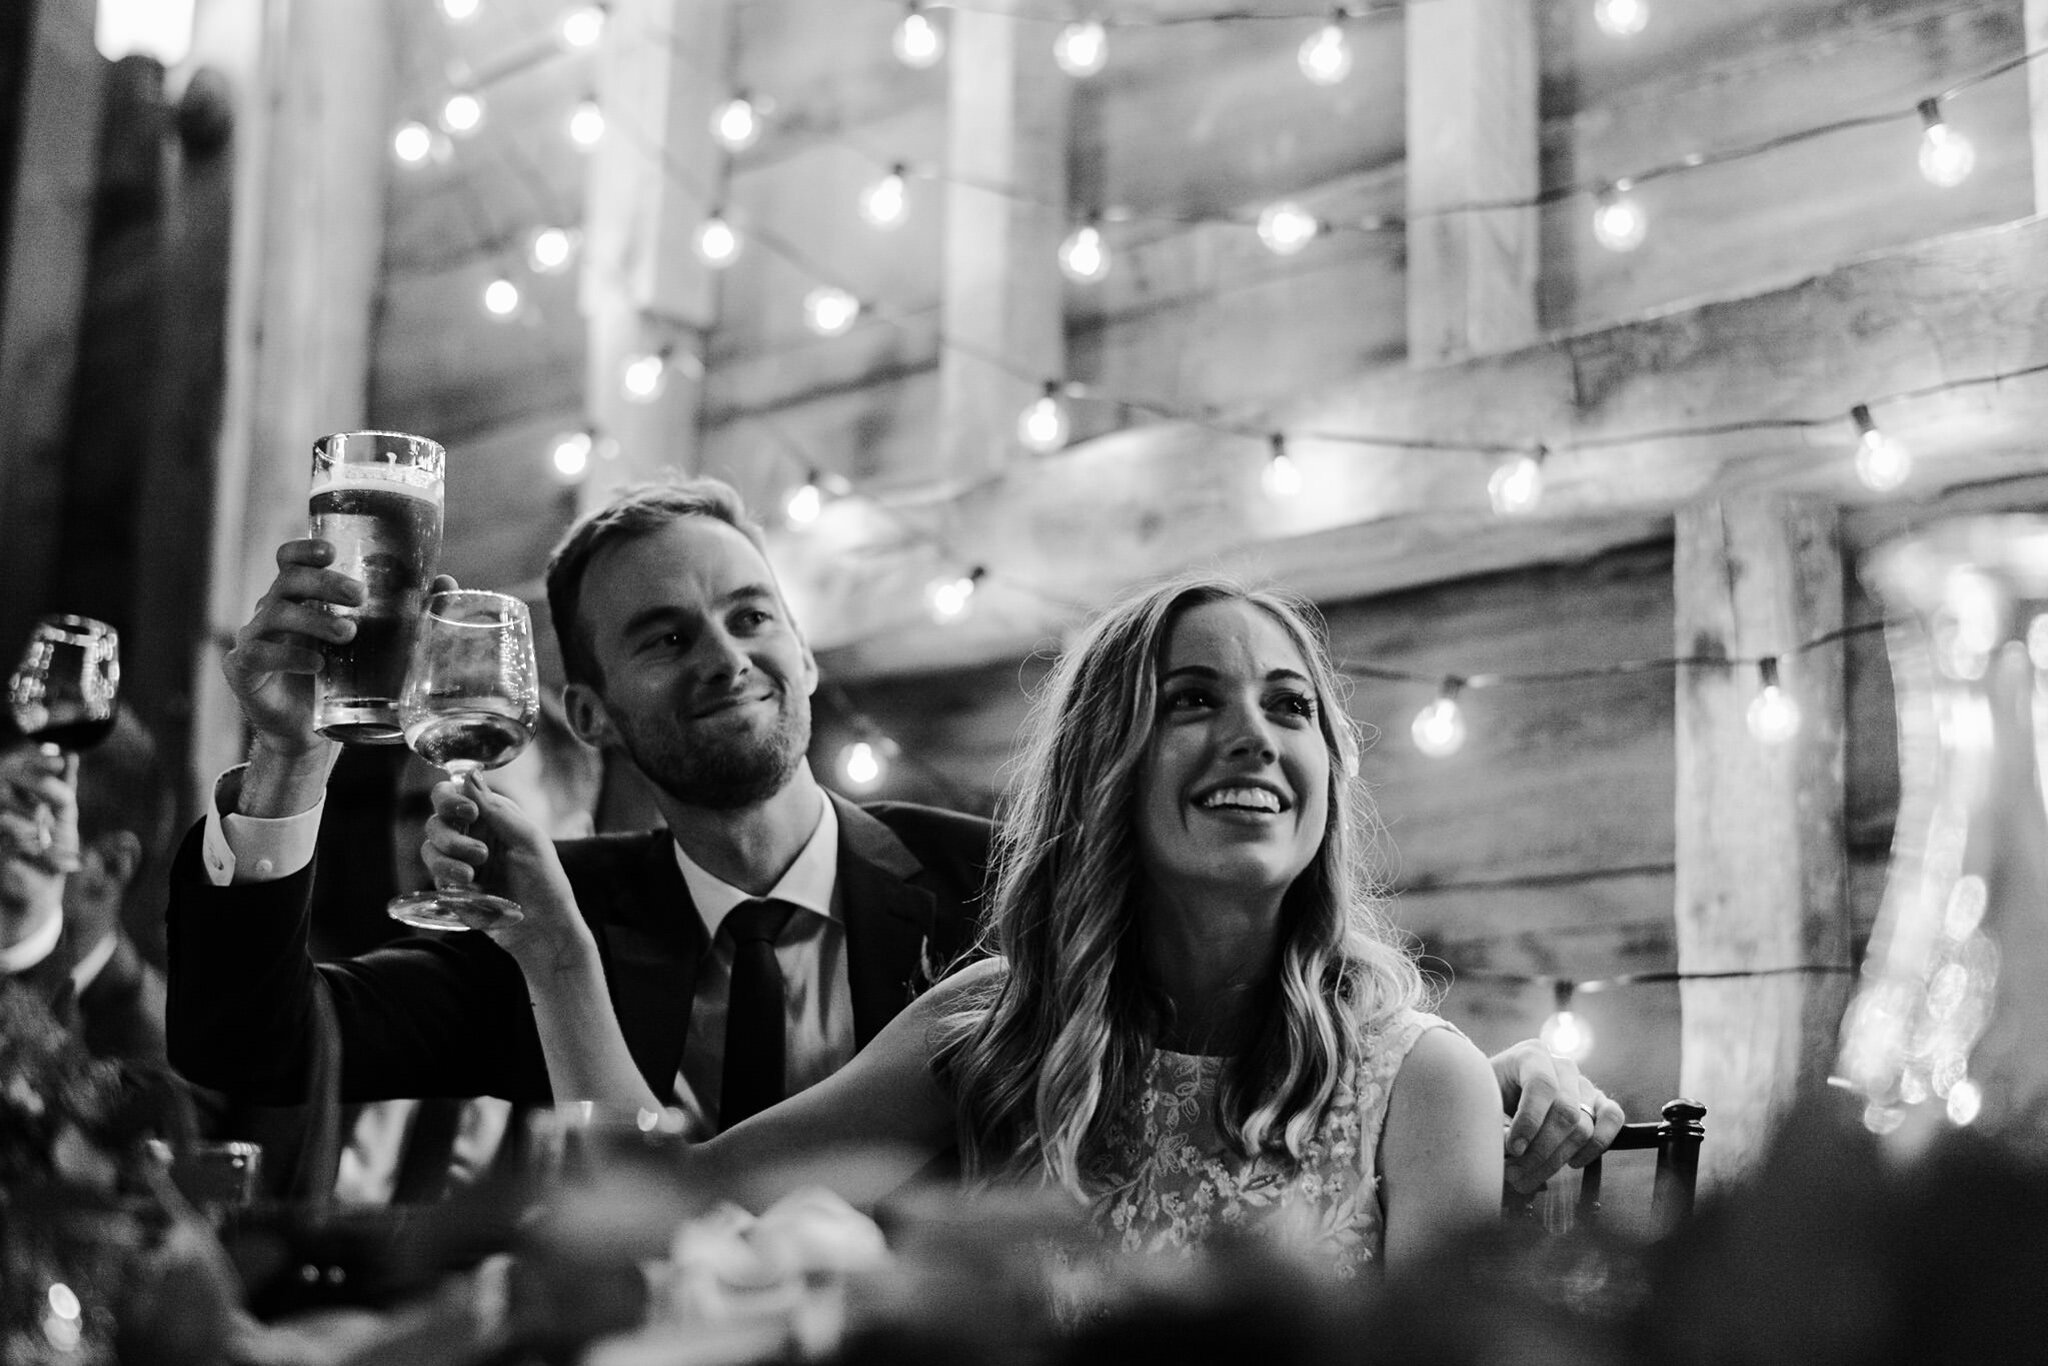 075-bride-groom-speech-barn-reception-string-lights-romantic.jpg